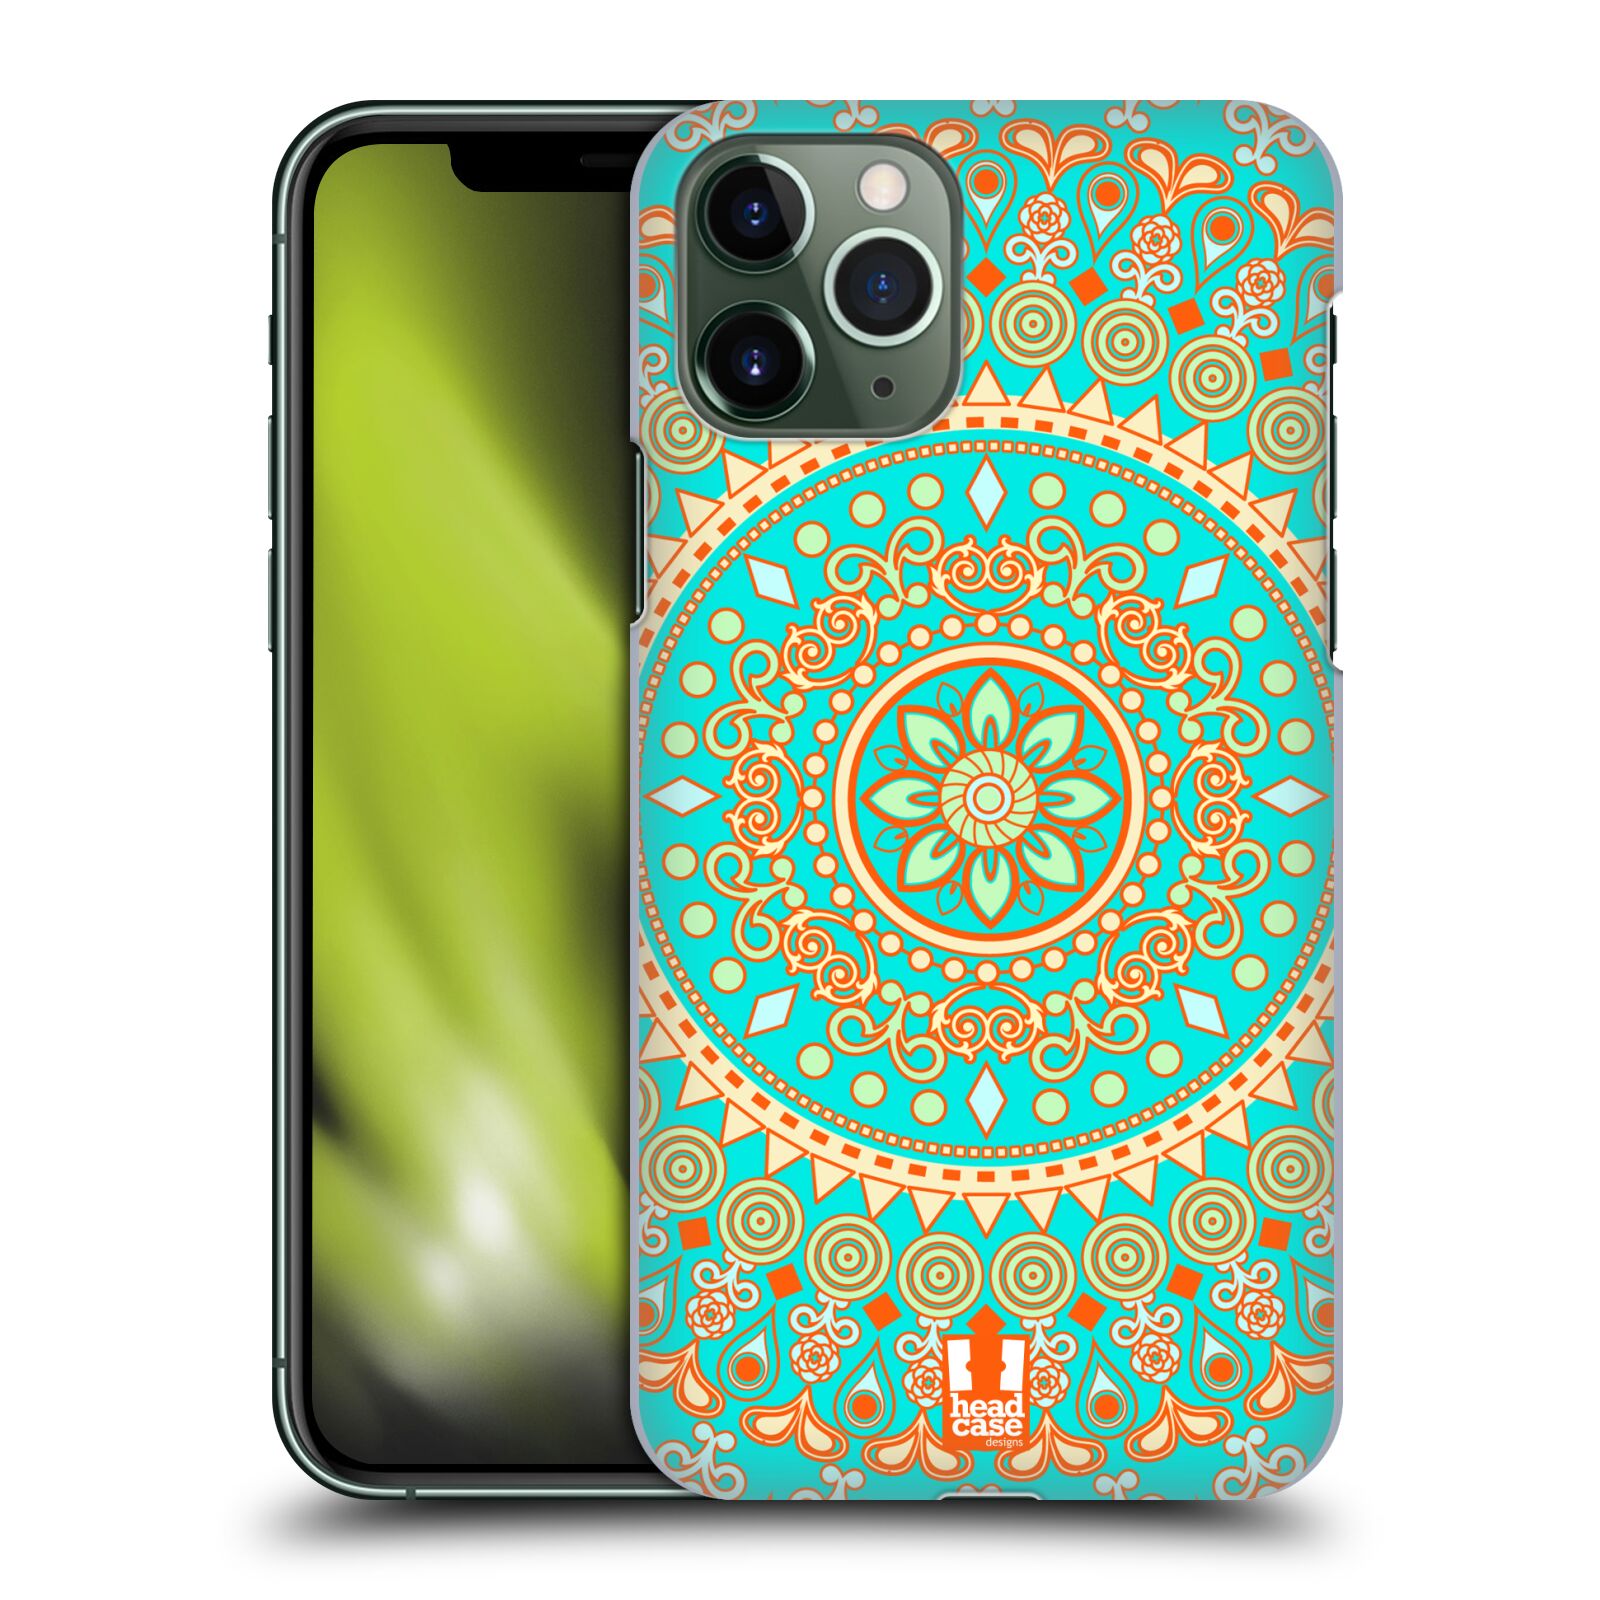 Pouzdro na mobil Apple Iphone 11 PRO - HEAD CASE - vzor Indie Mandala slunce barevný motiv TYRKYSOVÁ, ZELENÁ